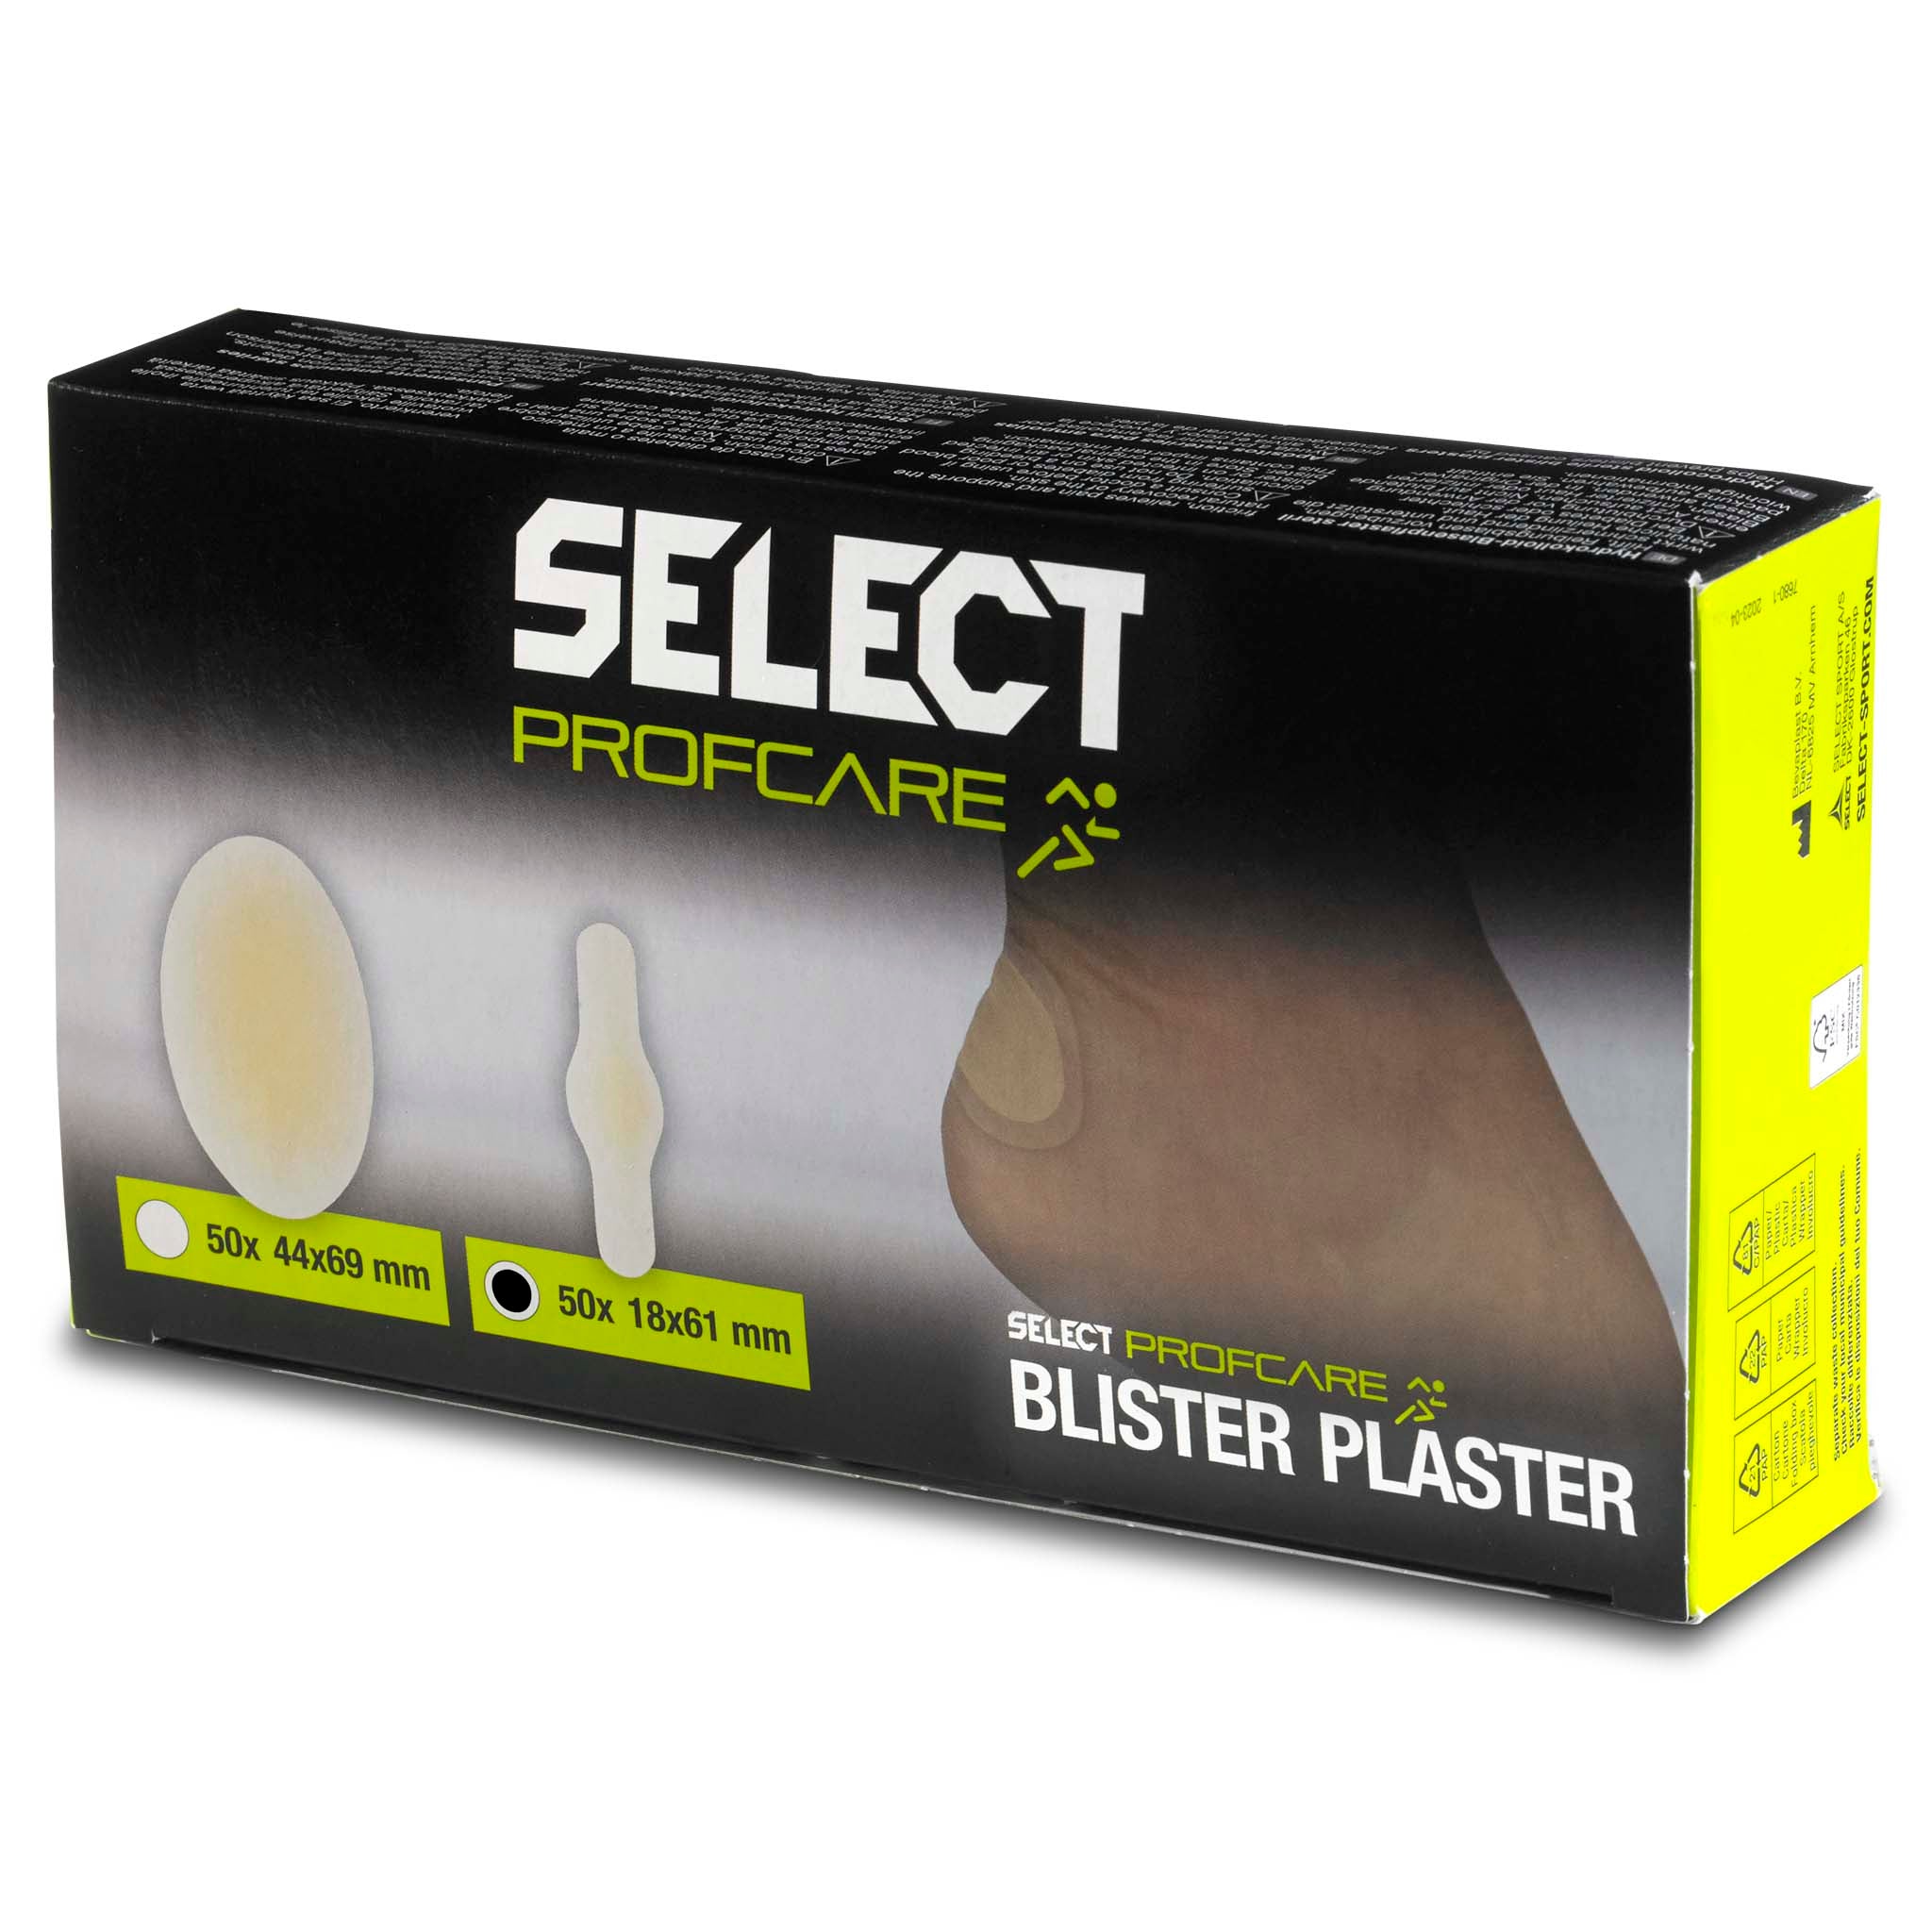 Blister plaster (small)